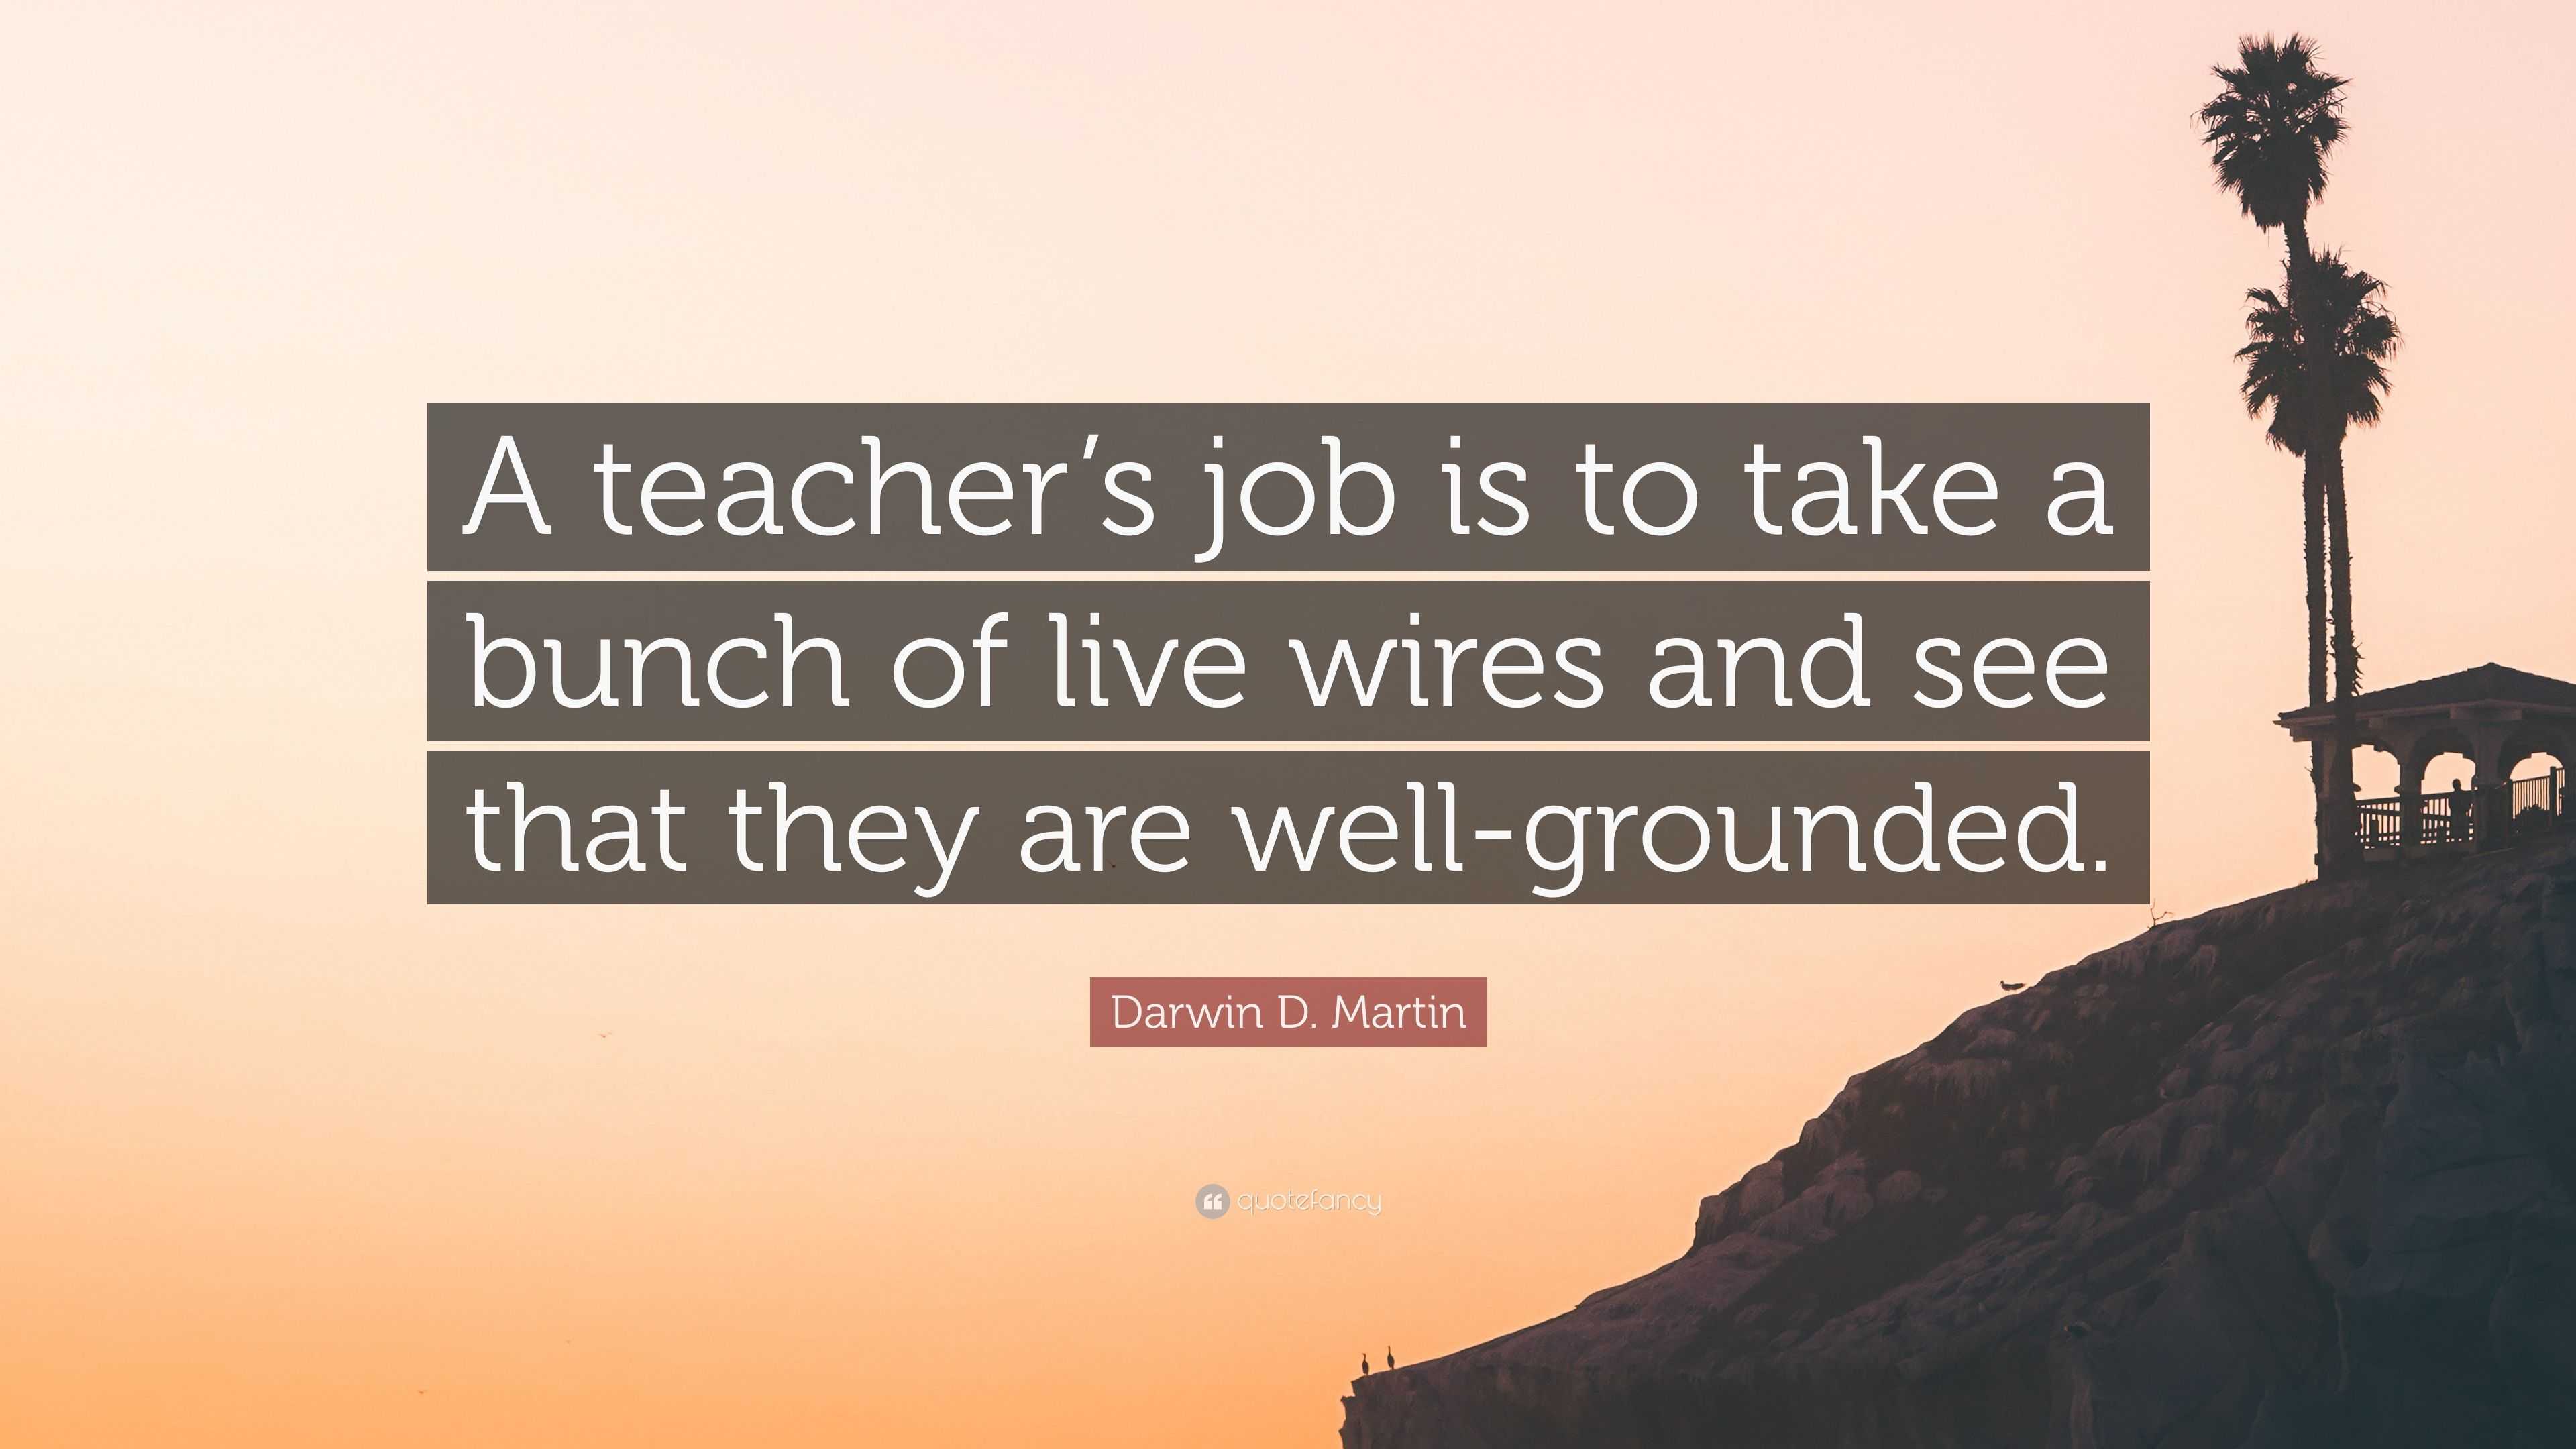 Se liguem no Golden Tips da semana com a Teacher @fragaines. Vamos